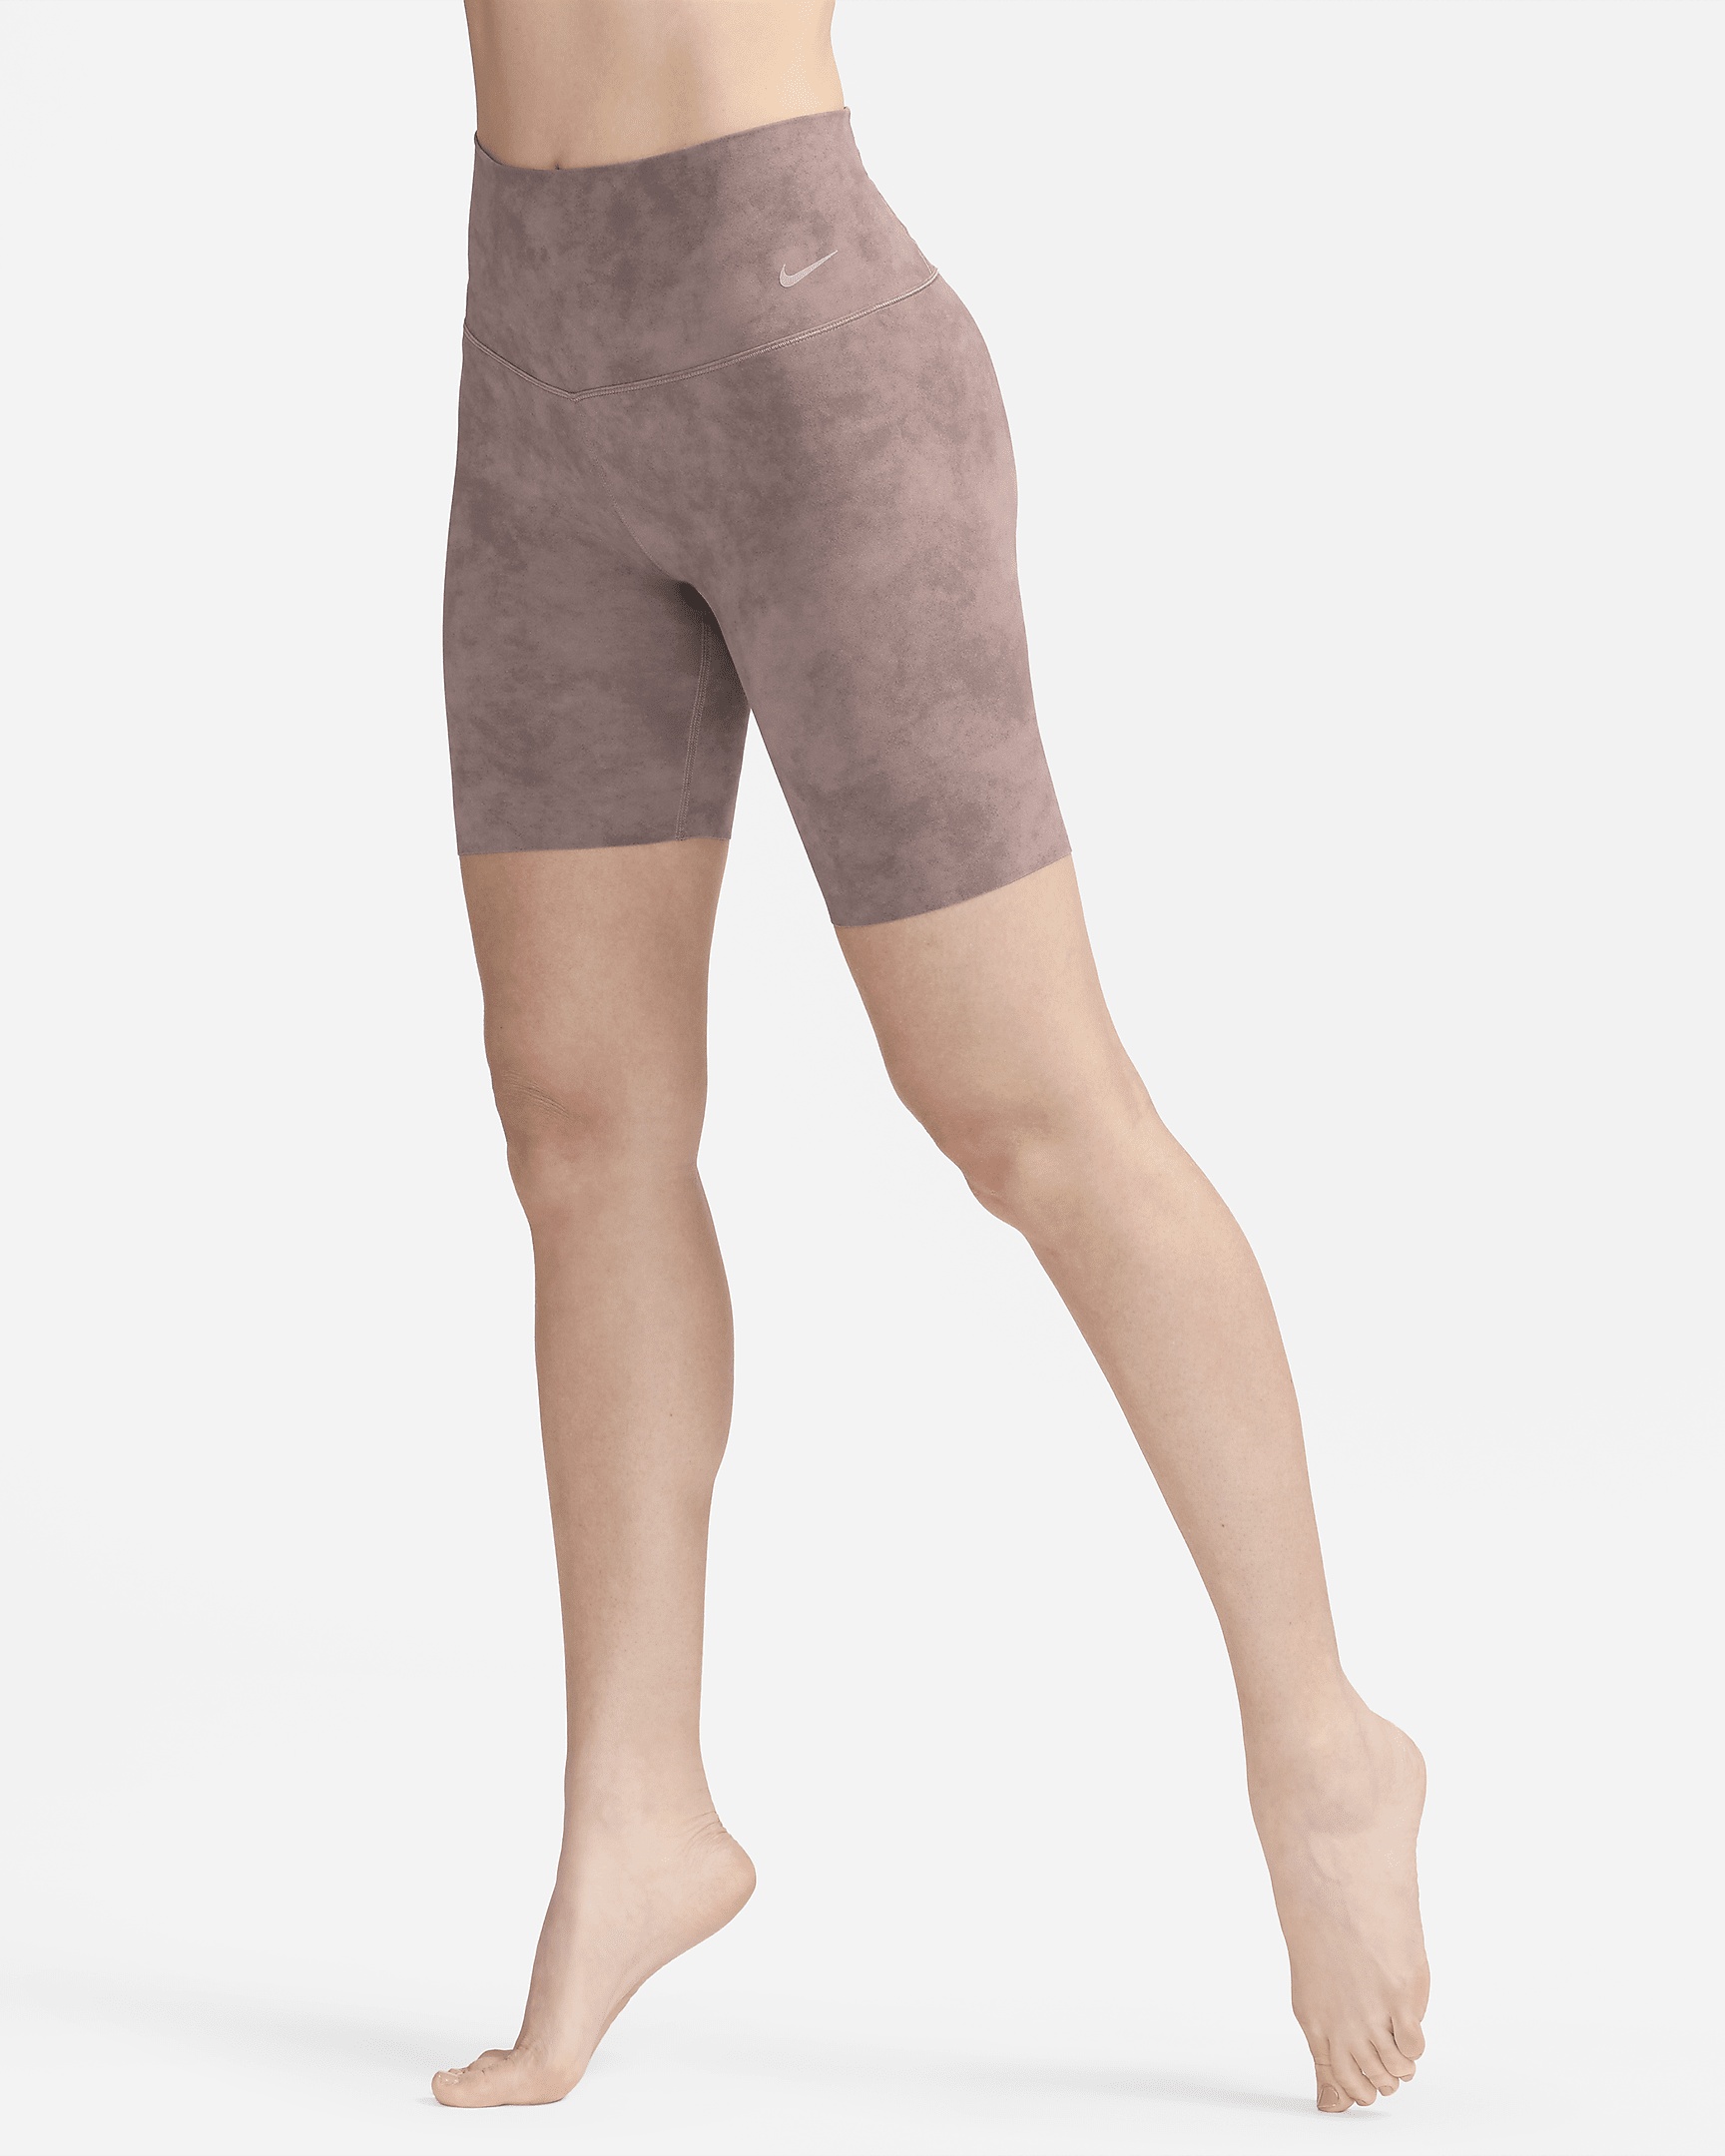 Nike Women's Zenvy Tie-Dye Gentle-Support High-Waisted 8" Biker Shorts - 3